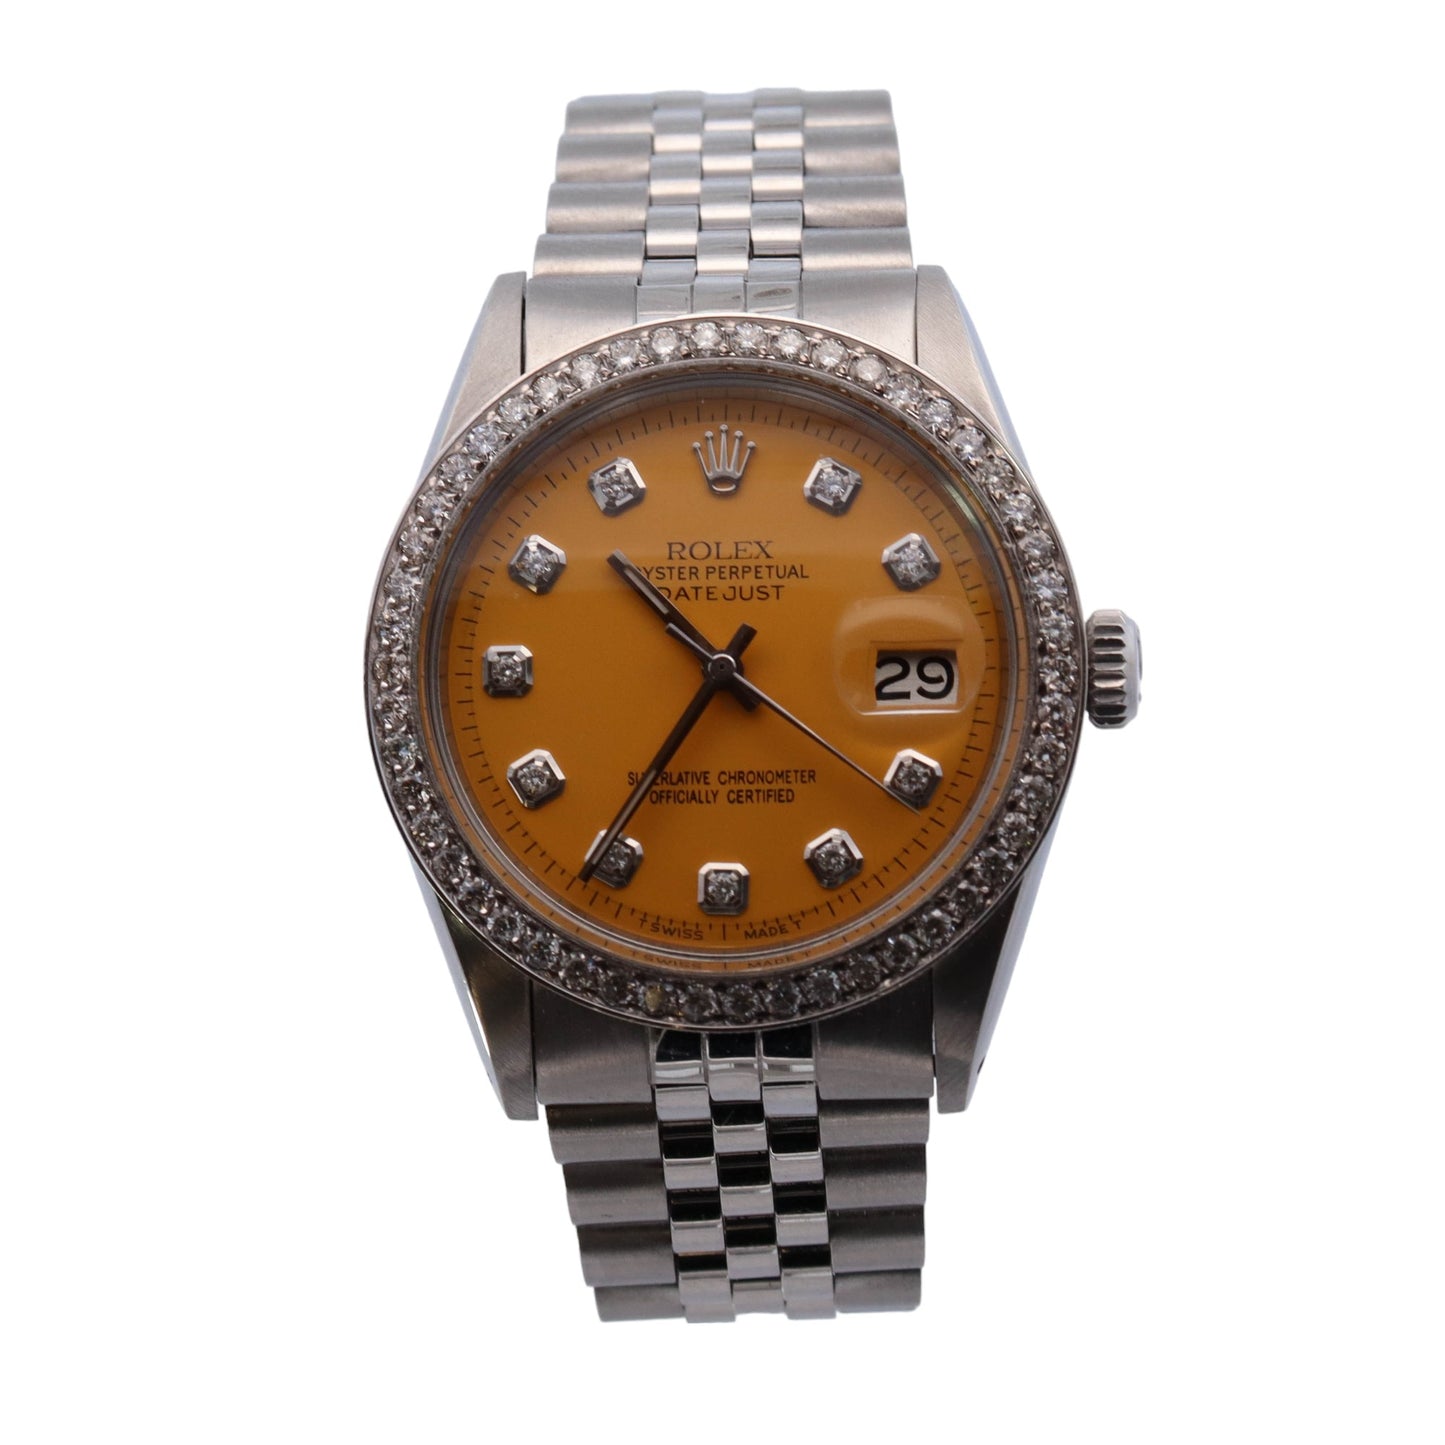 Rolex Datejust Stainless Steel 36mm Custom Yellow Diamond Dial Watch Reference #: 1603 - Happy Jewelers Fine Jewelry Lifetime Warranty